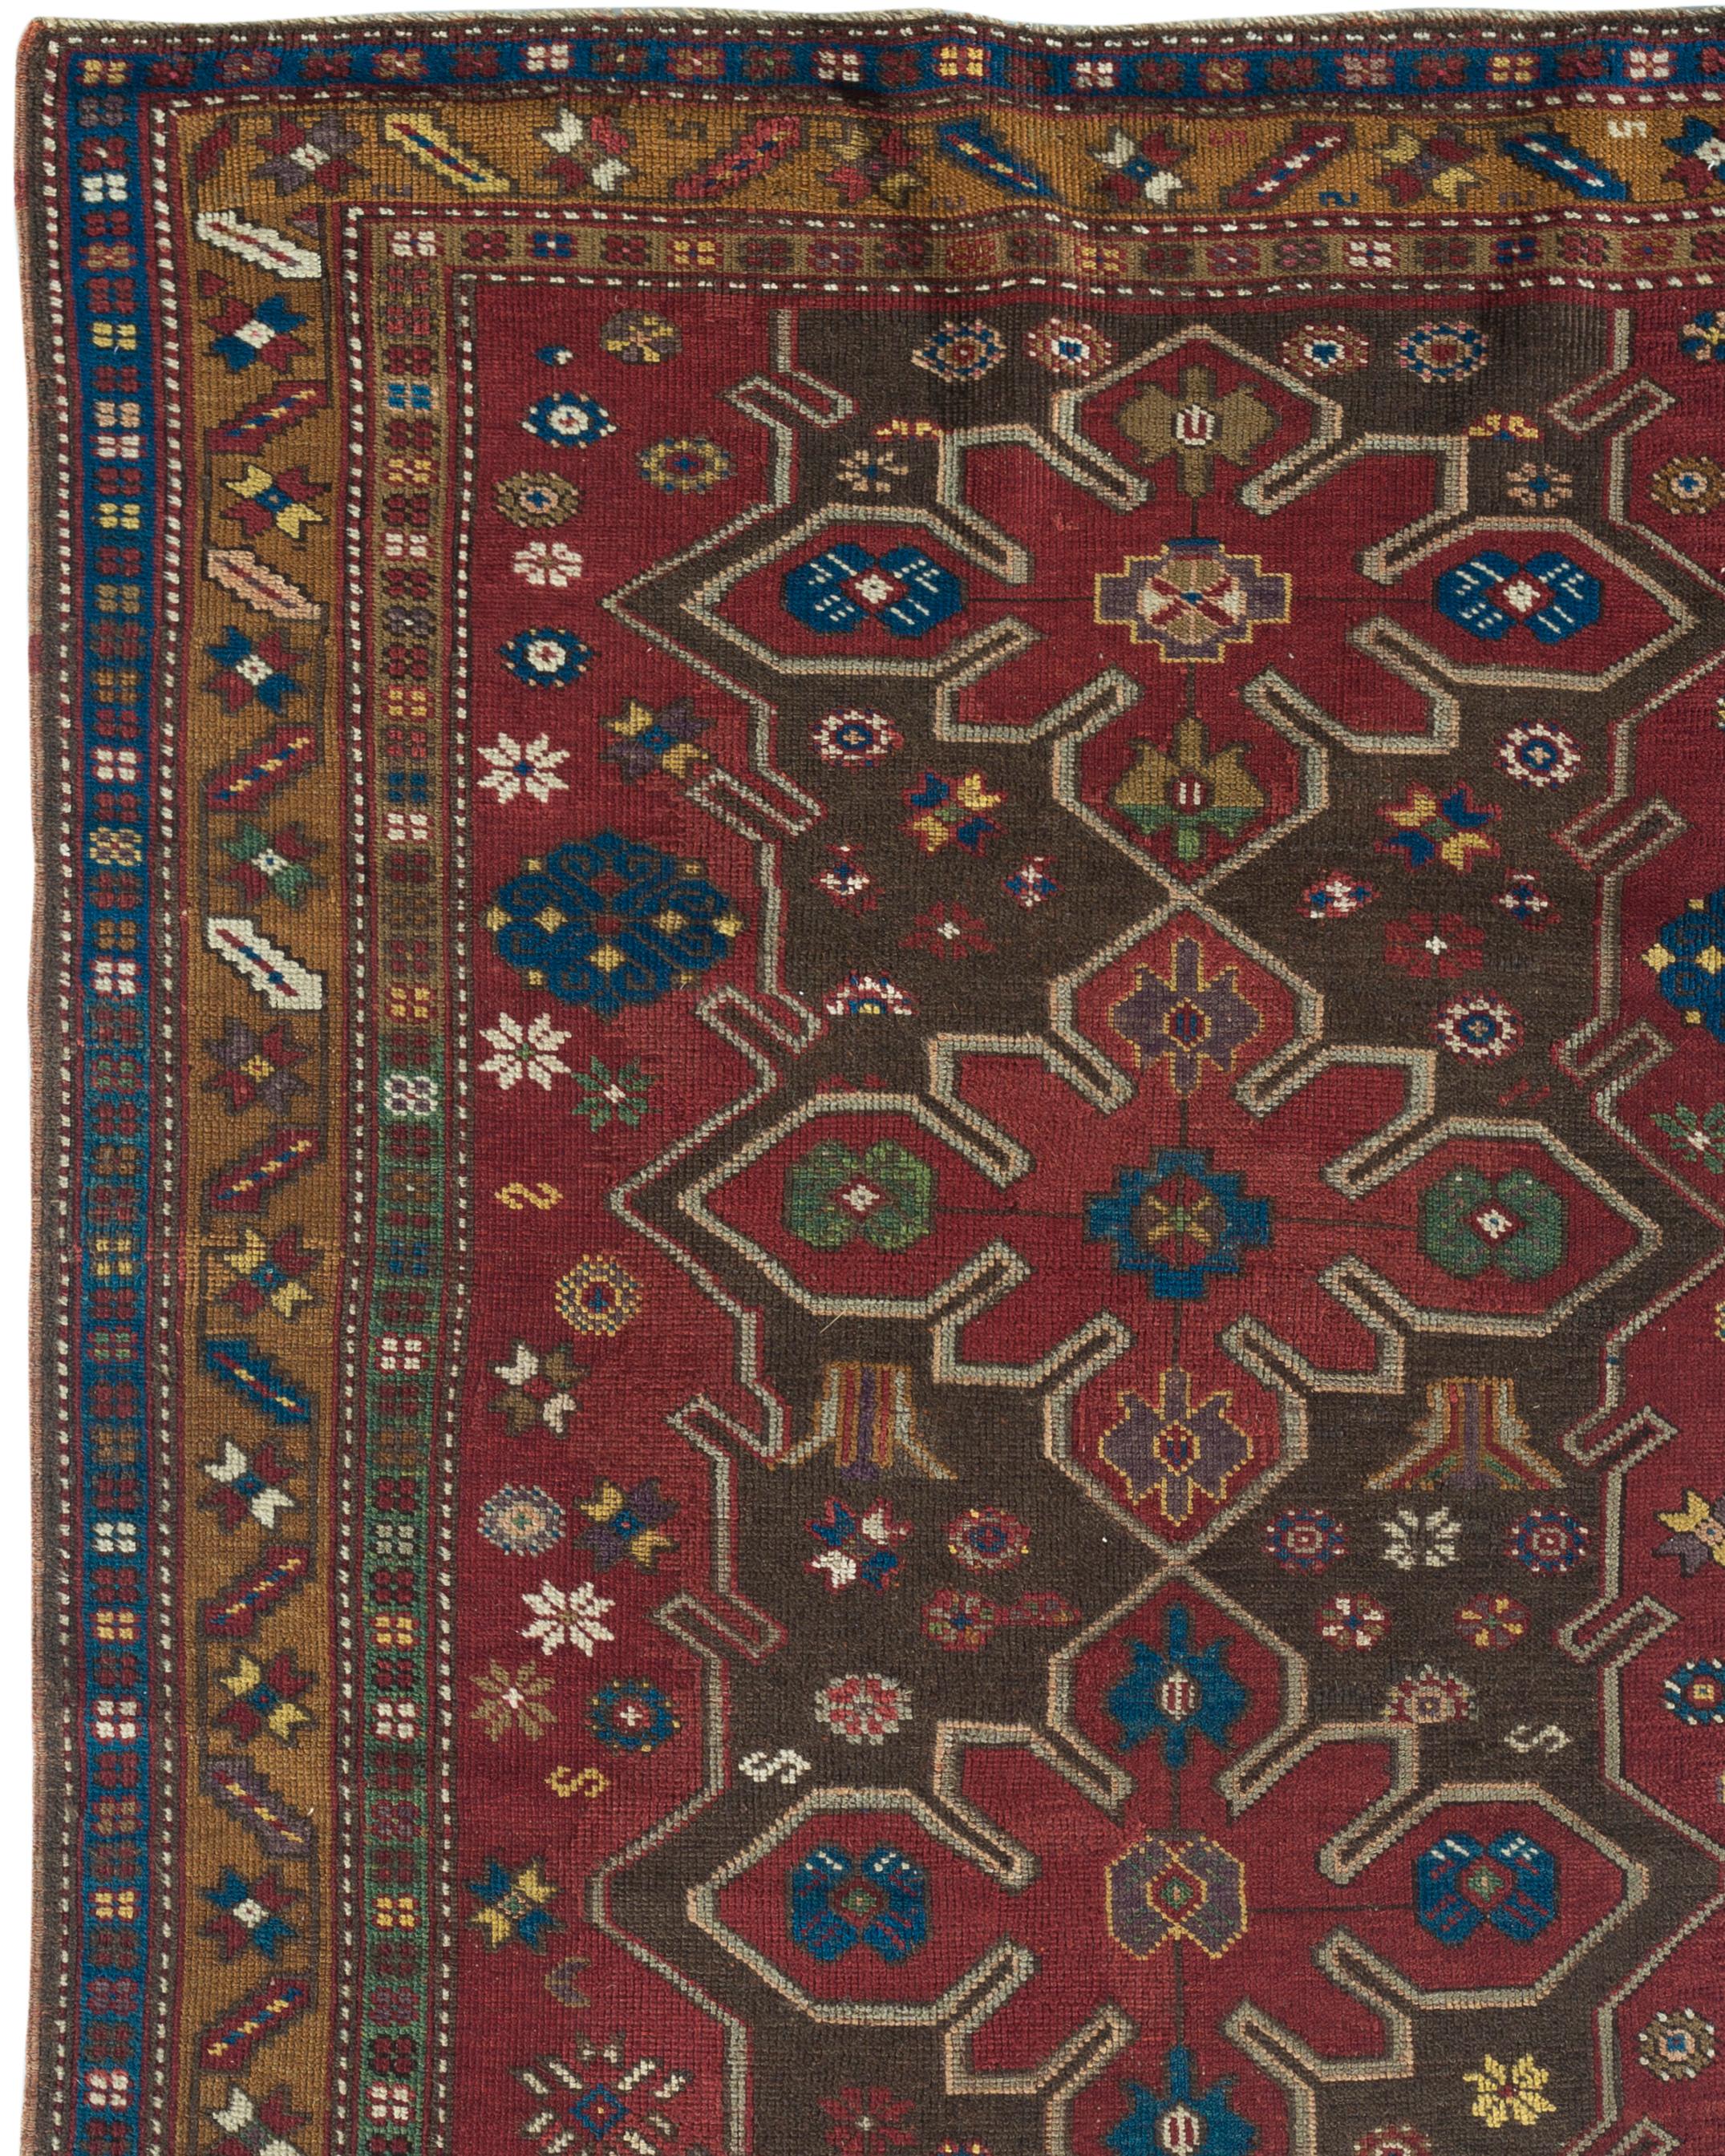 Antiker kaukasischer Kazak-Teppich, um 1880. Handgewebter Teppich aus dem Südwesten des Kaukasus, Kazak, um 1880. Die Detailgenauigkeit des Designs und die handwerkliche Kunstfertigkeit beim Weben haben ein wahres Kunstwerk geschaffen. Das